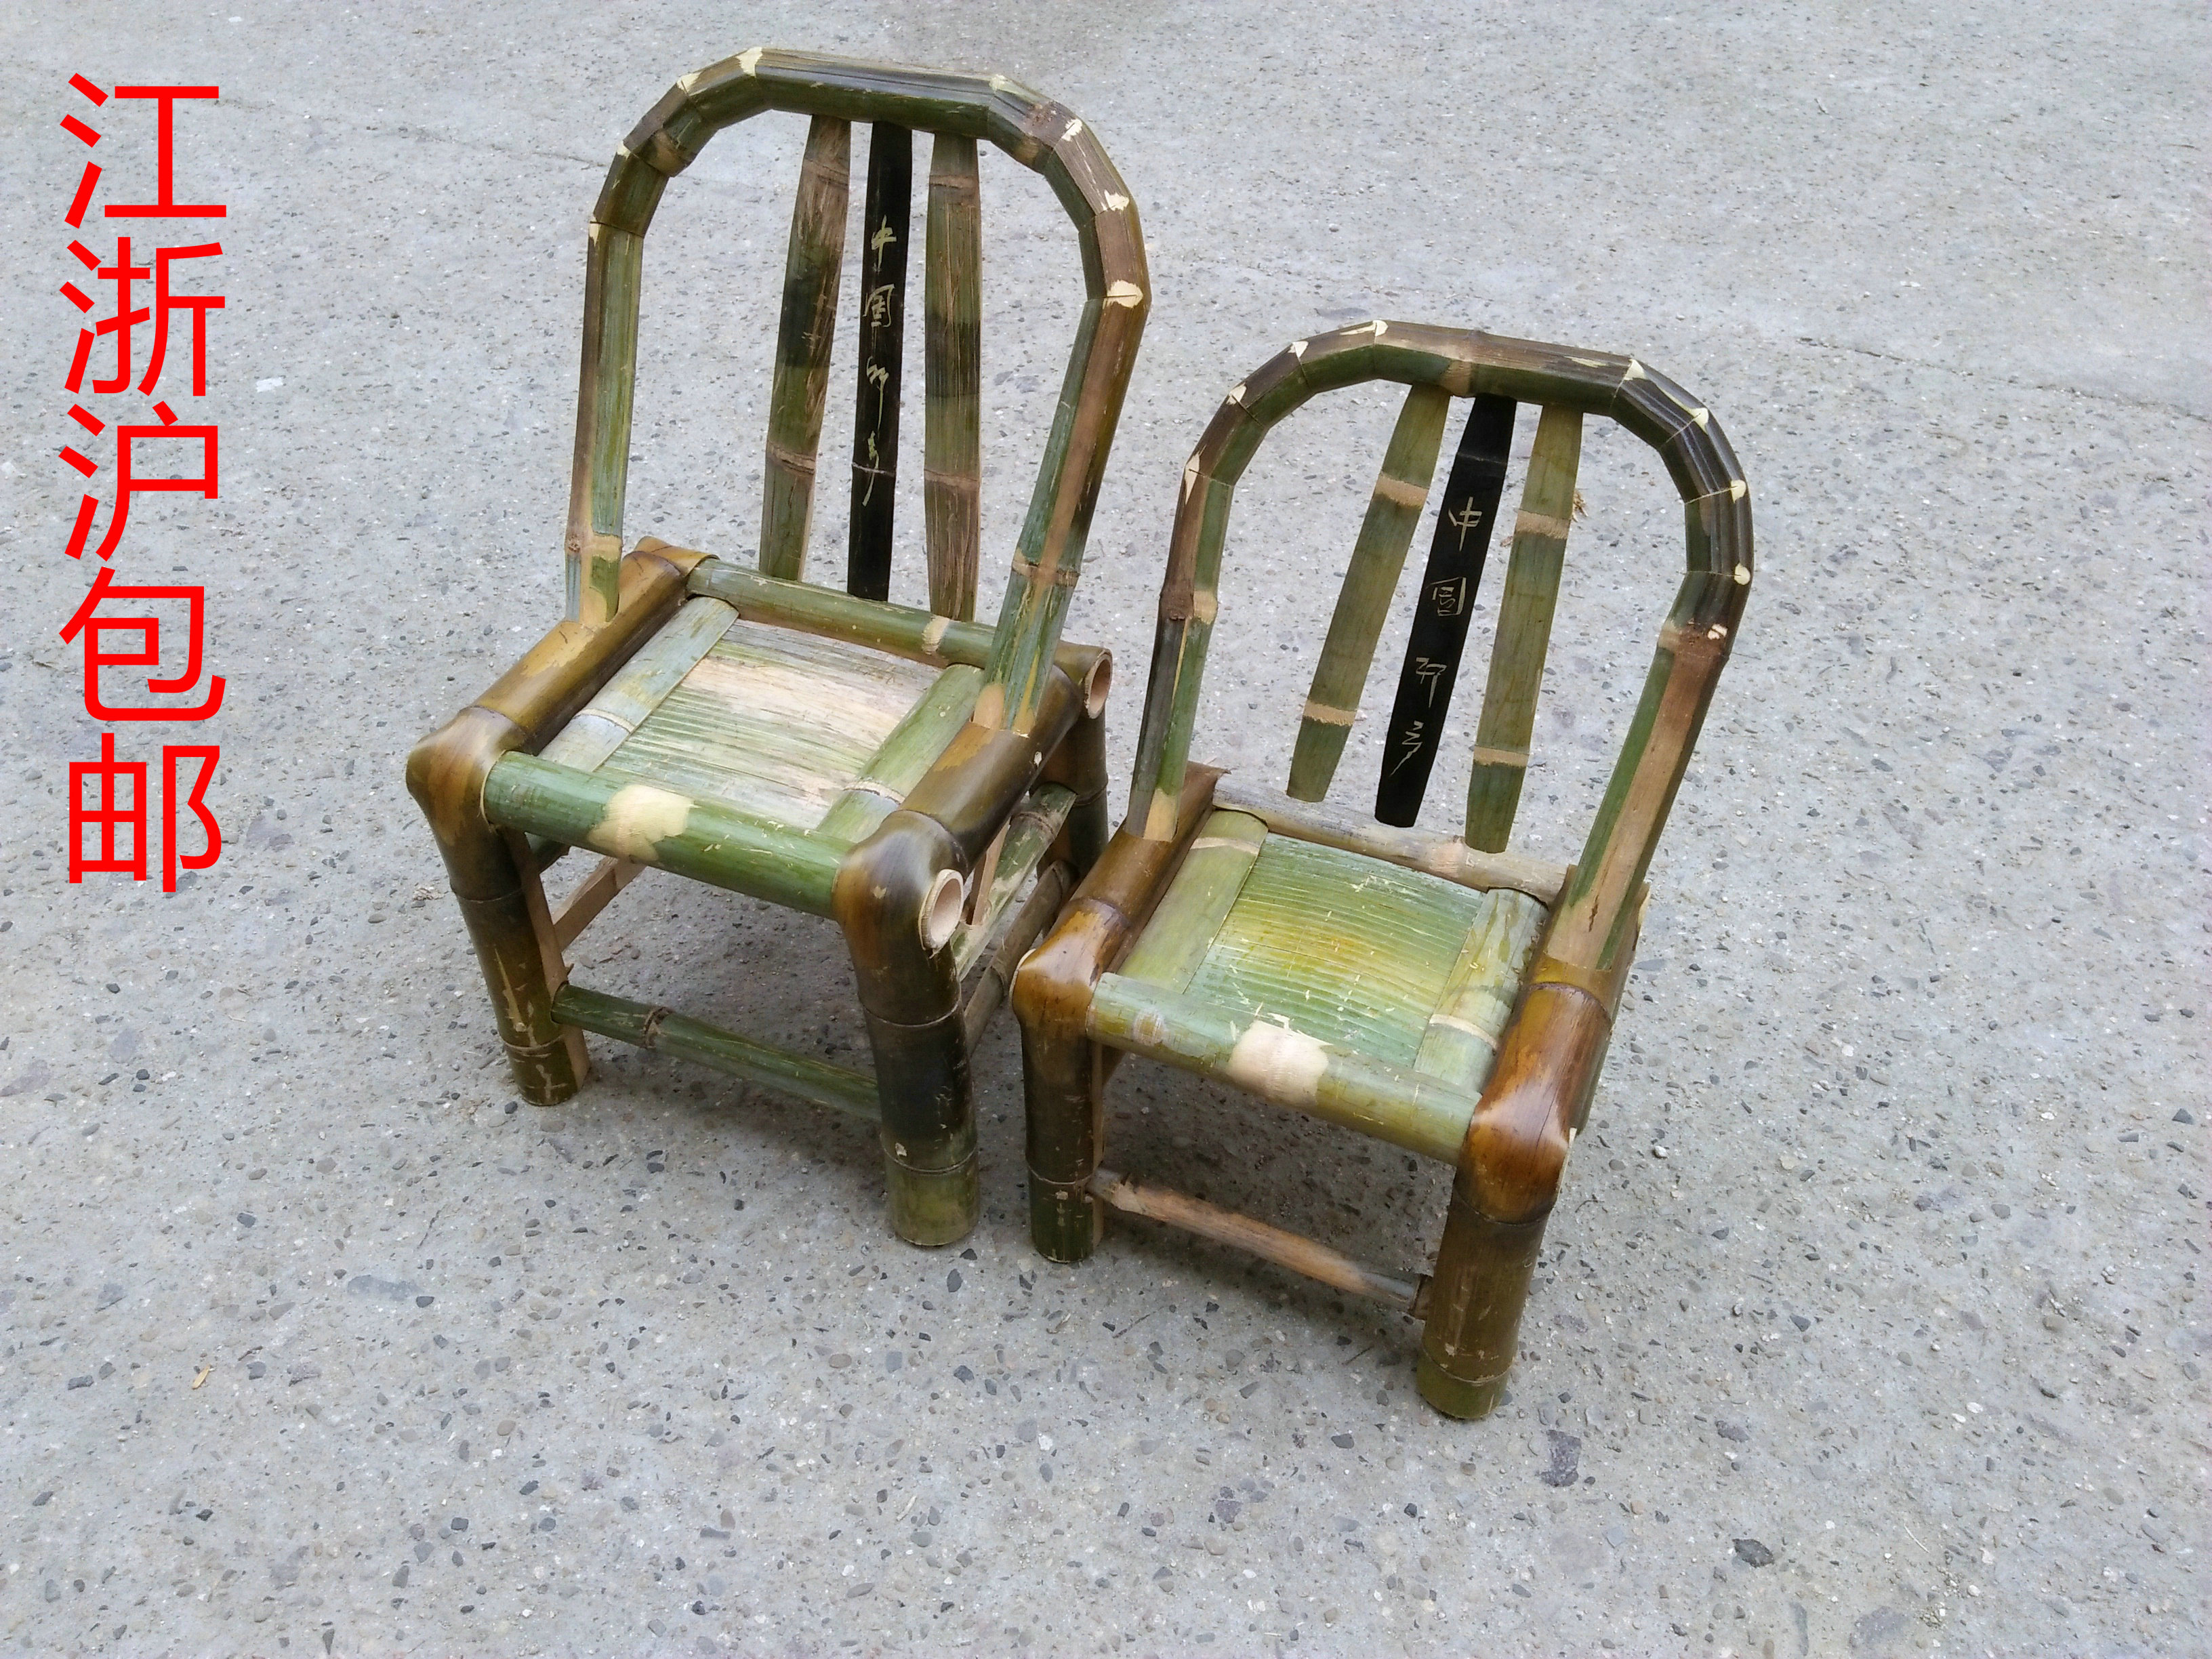 竹椅子 凳子小竹椅手工靠背椅竹制品 家用竹子小凳子竹子制品家具